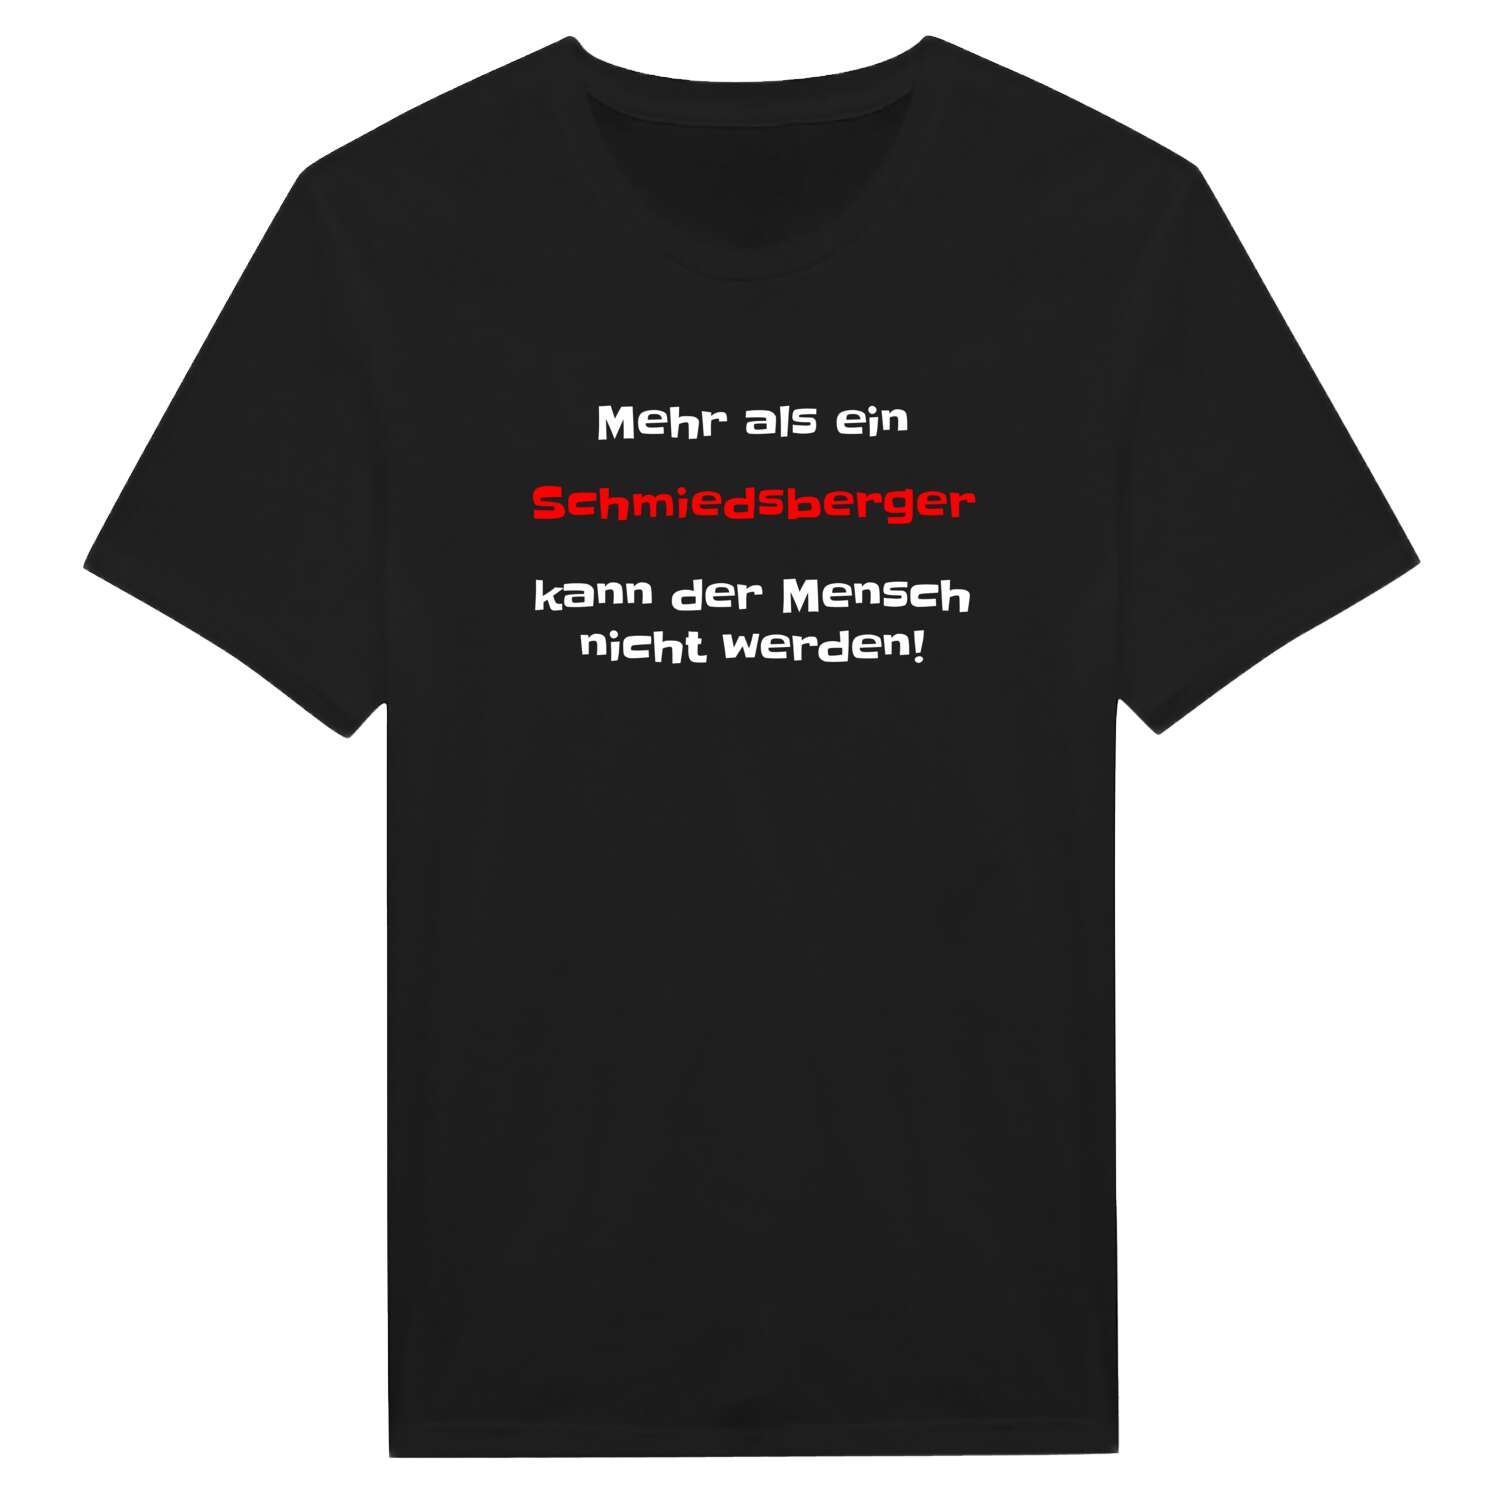 Schmiedsberg T-Shirt »Mehr als ein«